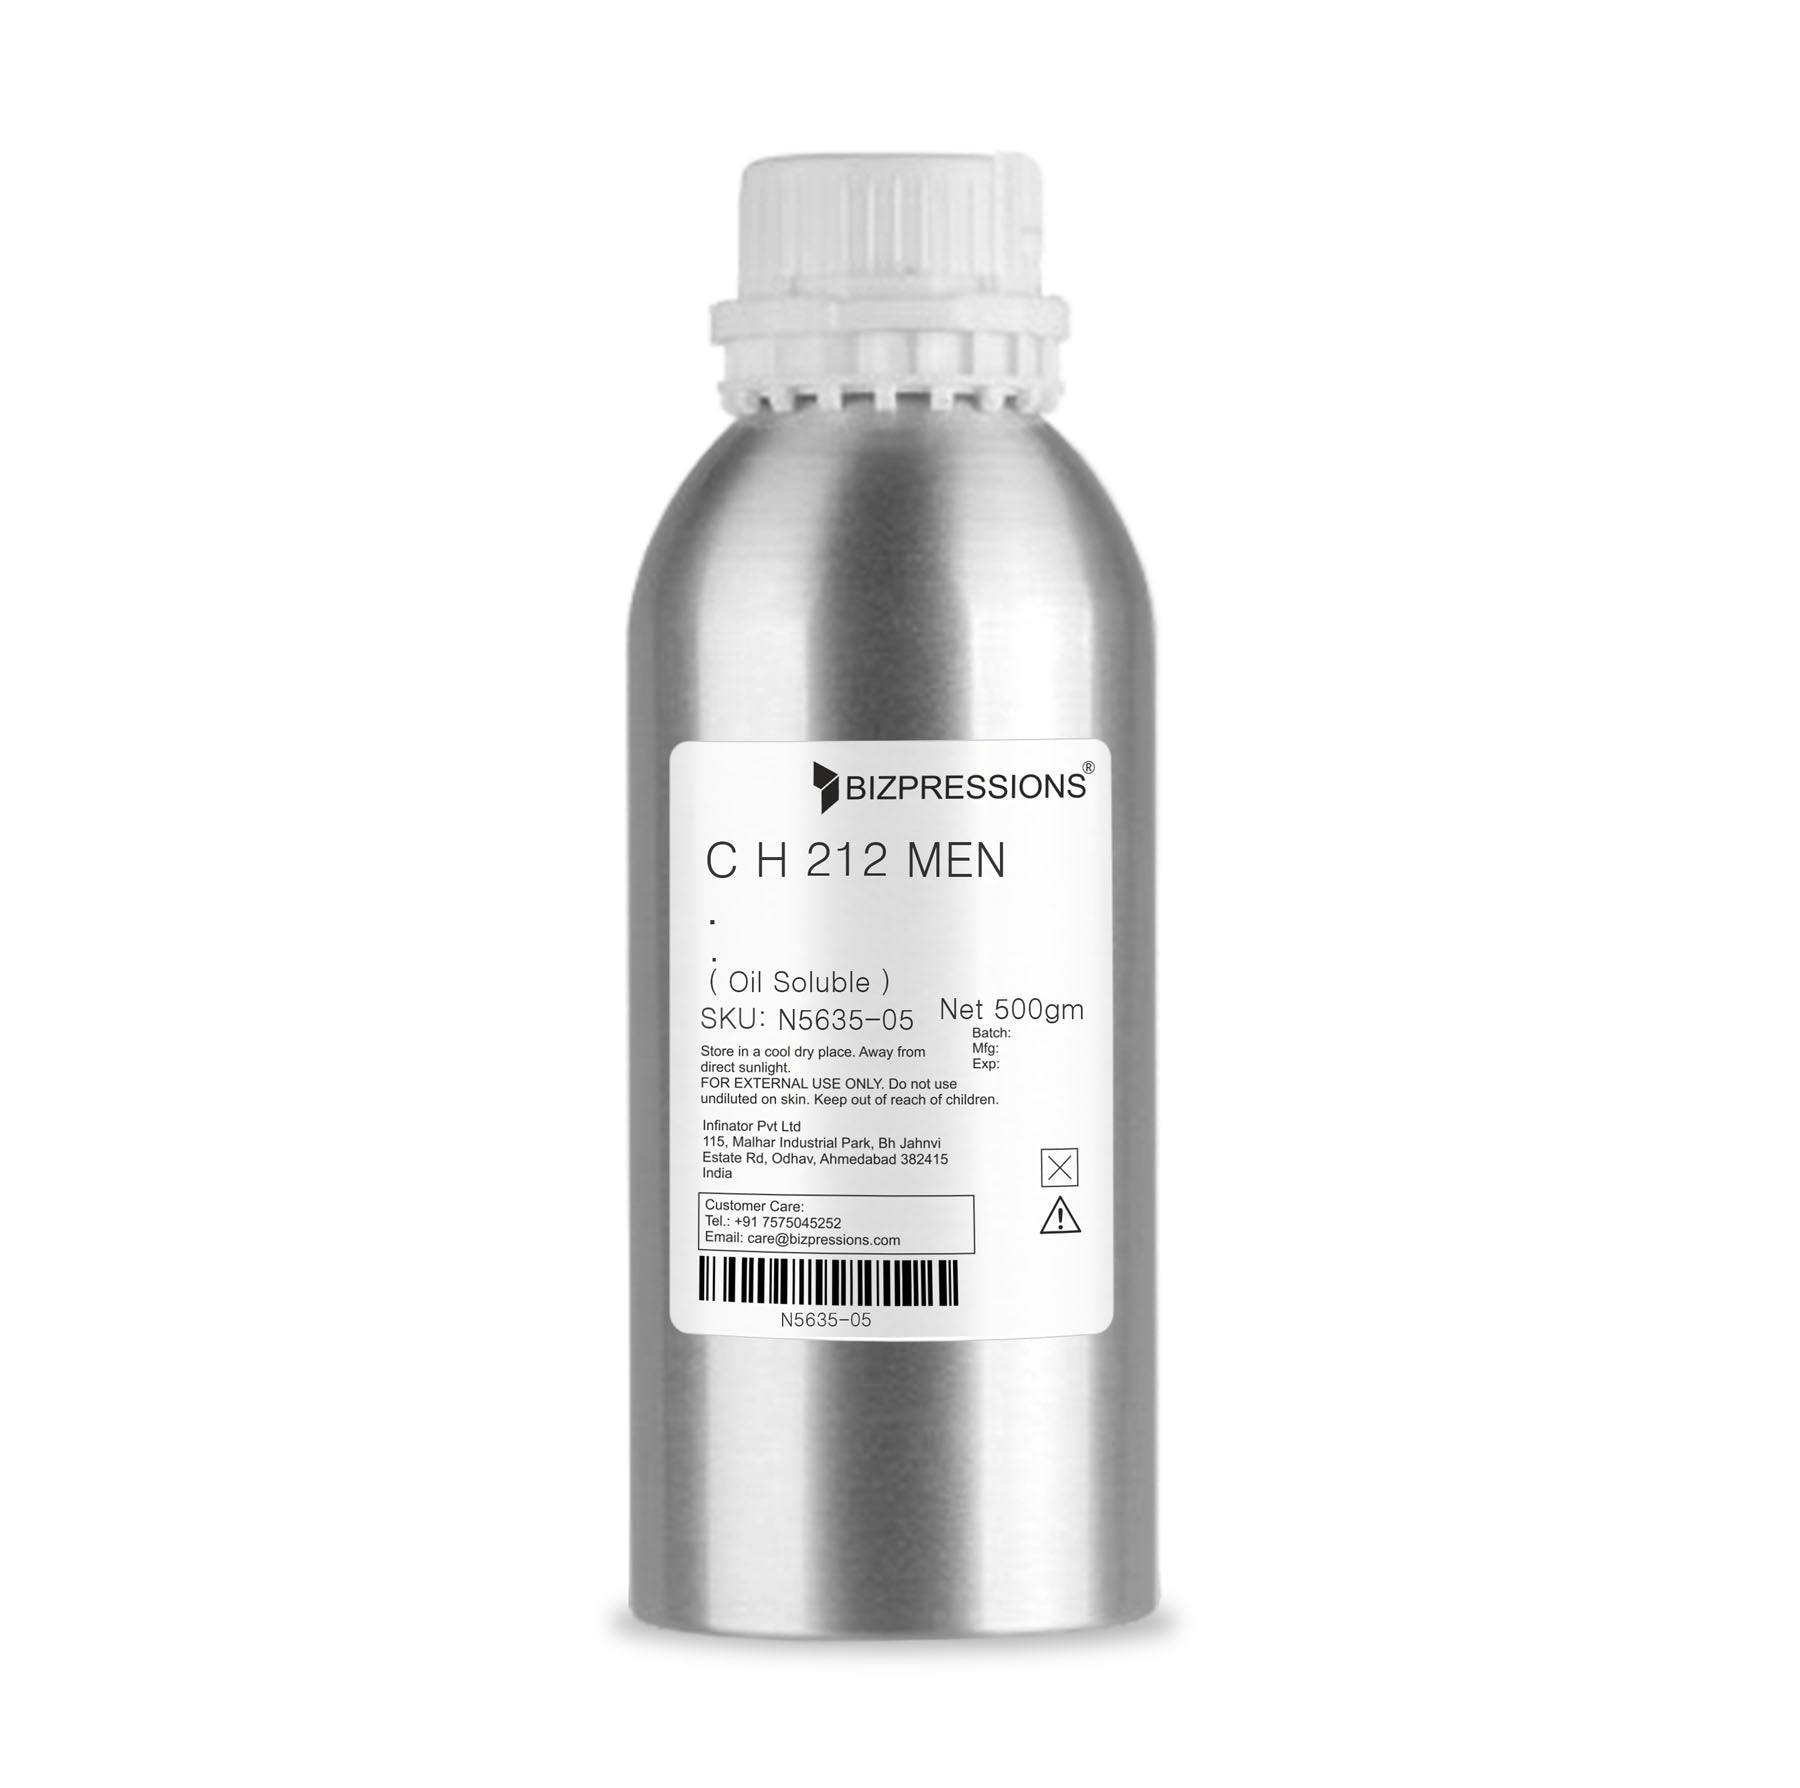 C H 212 MEN - Fragrance ( Oil Soluble ) - 500 gm